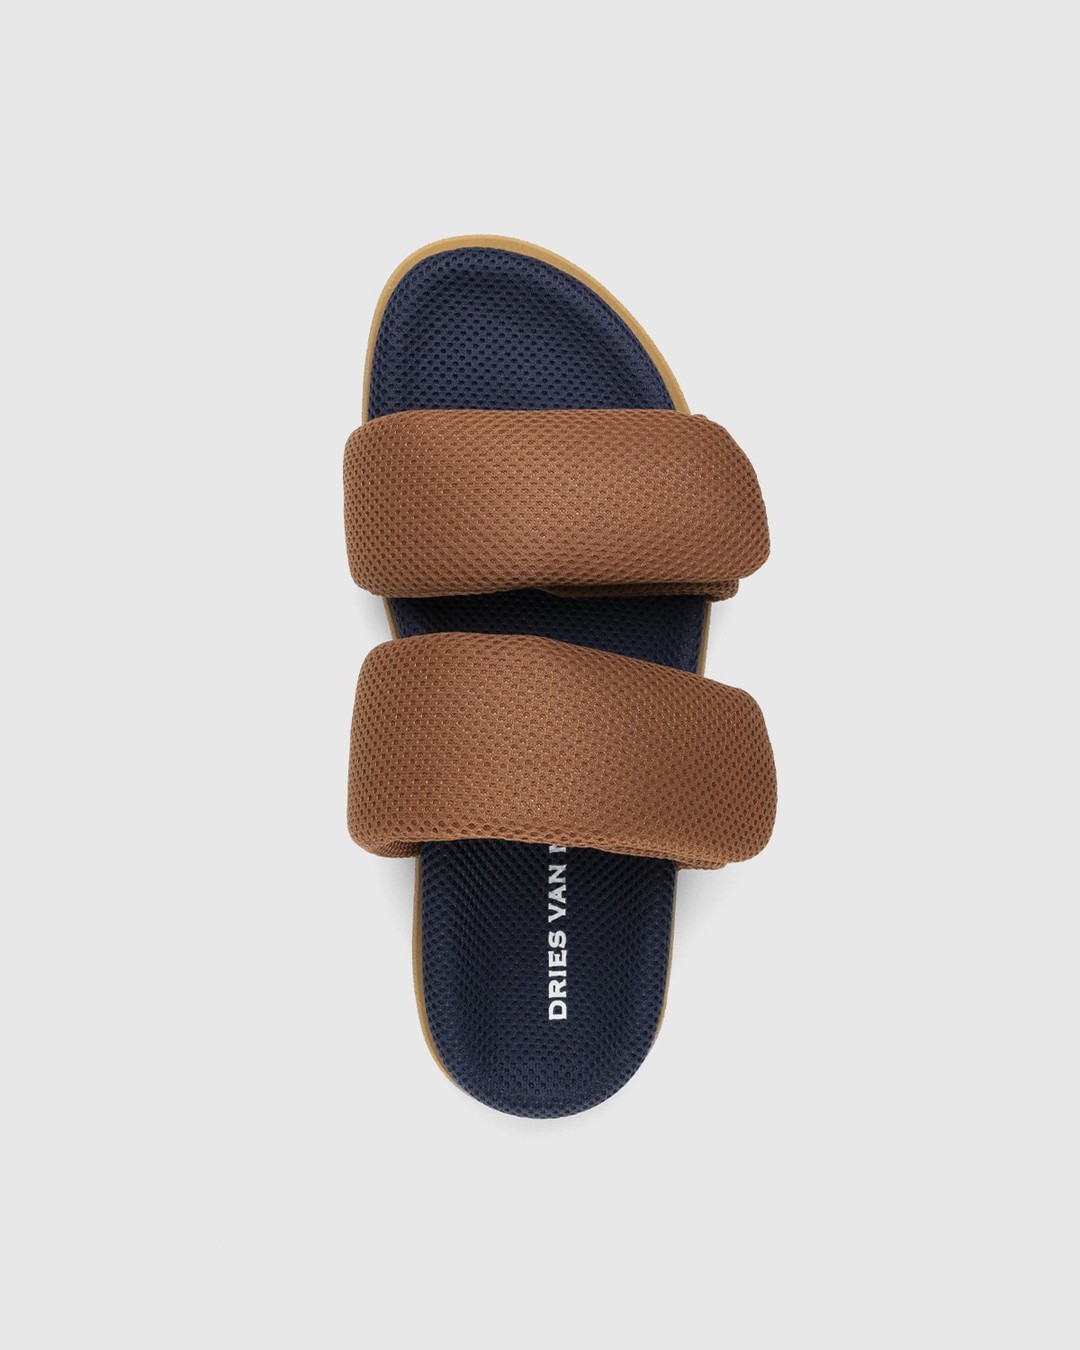 Dries van Noten – Double Strap Sandals Brown/Navy - Sandals - Brown - Image 5